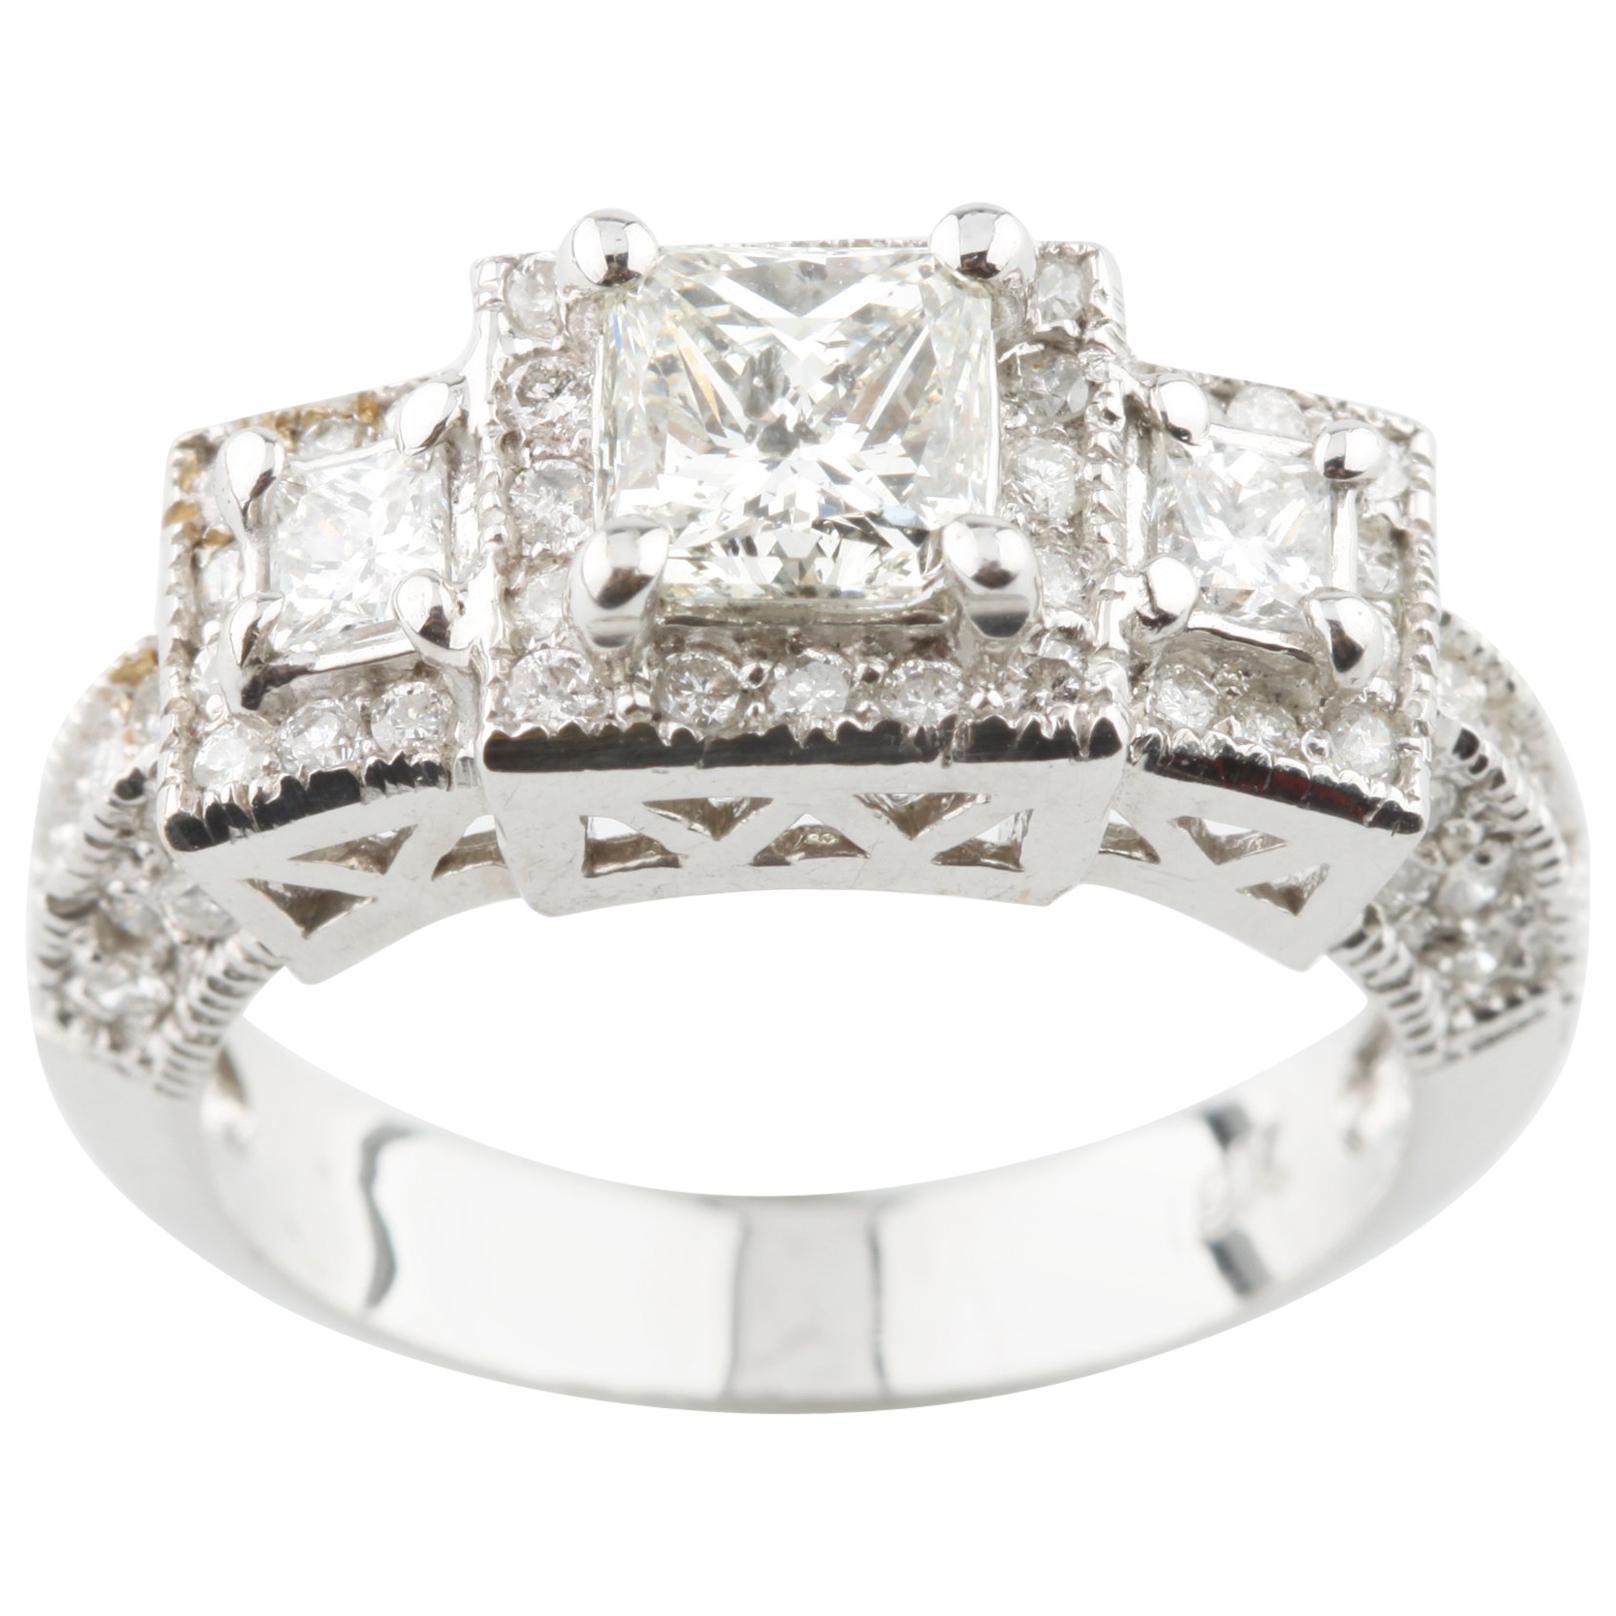 1.70 Carat Princess Cut Diamond 3-Stone 18 Karat White Gold Engagement Ring